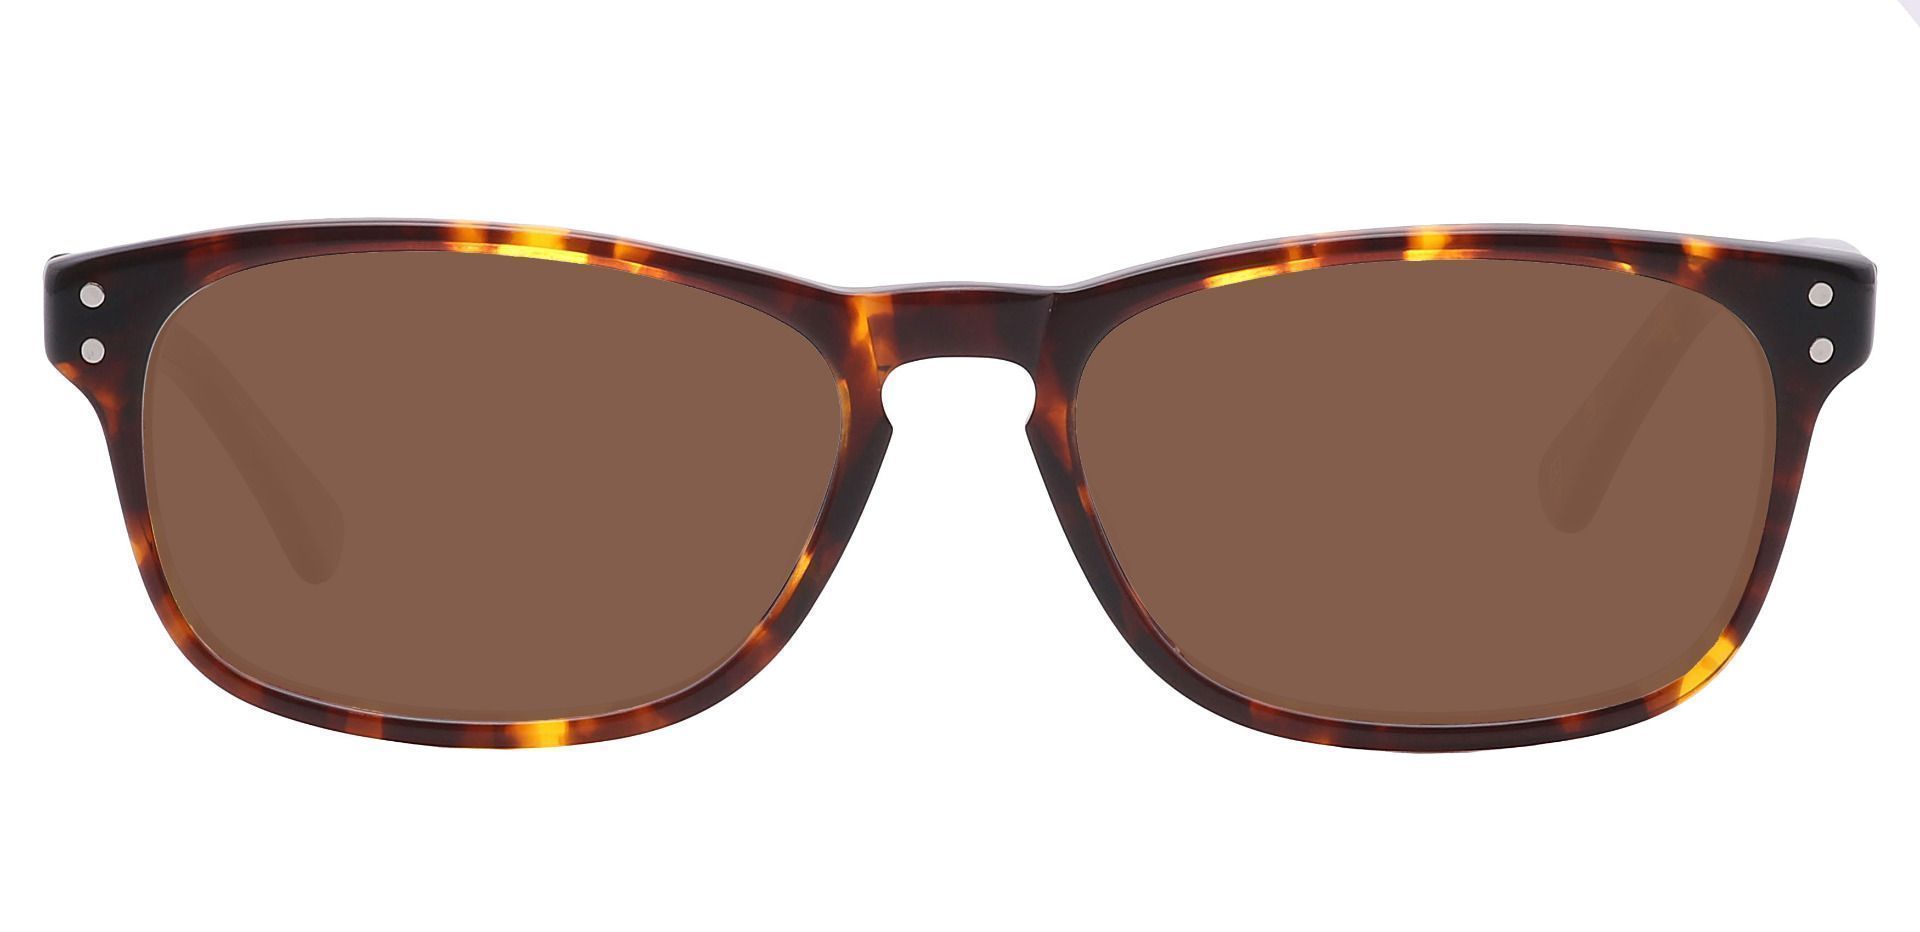 Morris Rectangle Progressive Sunglasses - Tortoise Frame With Brown Lenses